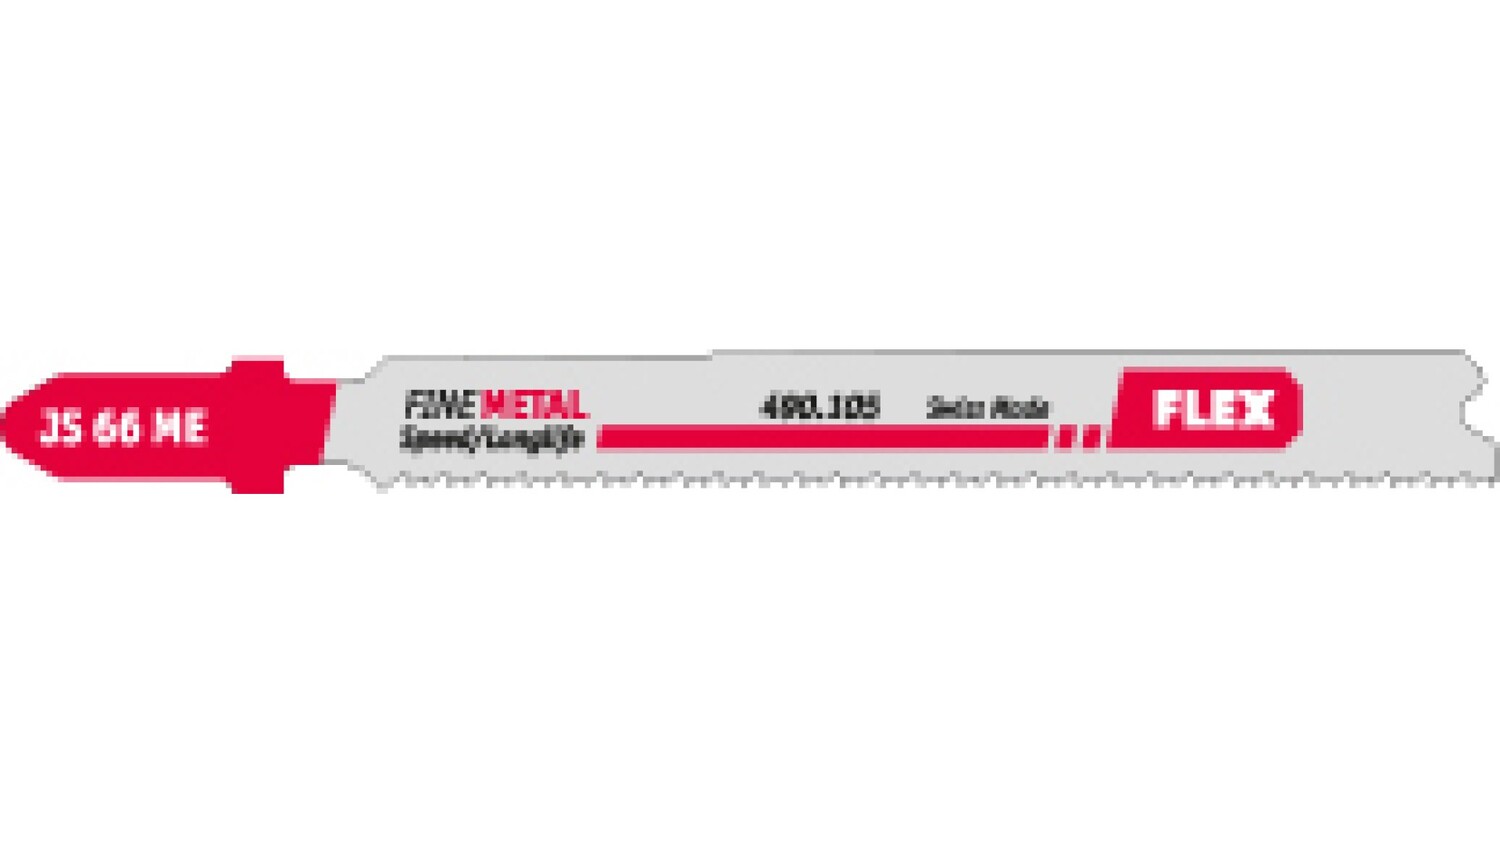 Пилки Flex для электролобзика по металлу JS 66 ME VE5 490105 пуходерка пластиковая мягкая с волнистыми зубьями средняя 9 5 х 16 5 см мятная